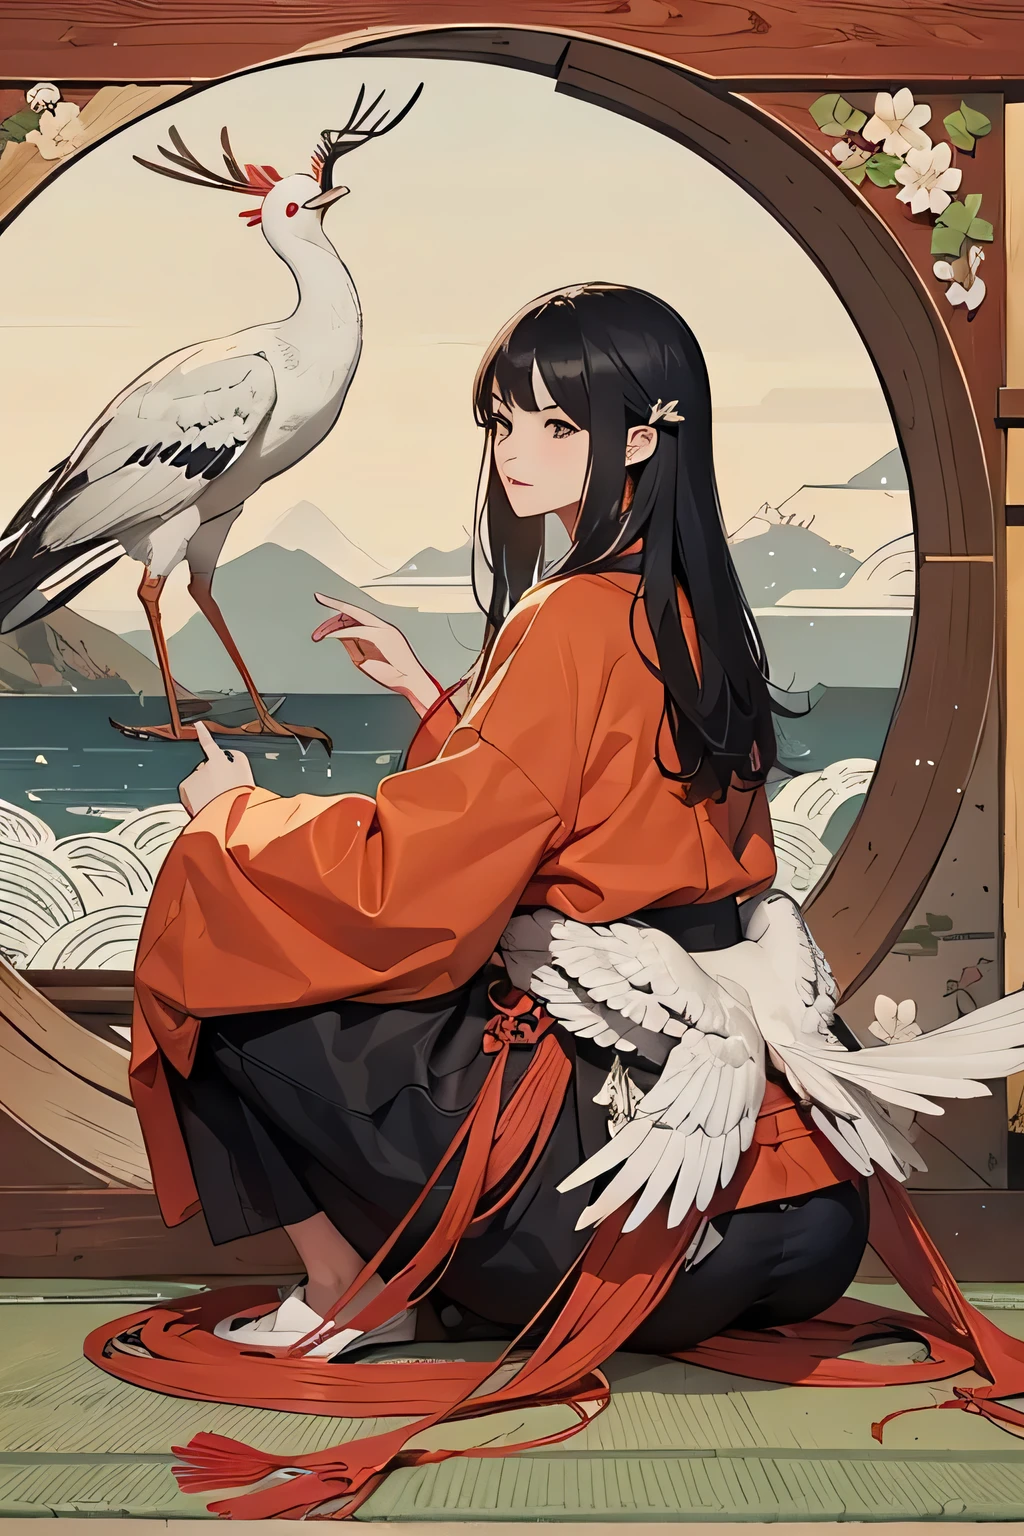 Ändern Sie den Vogel im Hintergrund in einen japanischen Kranich, Japanische Kraniche haben keine Hörner